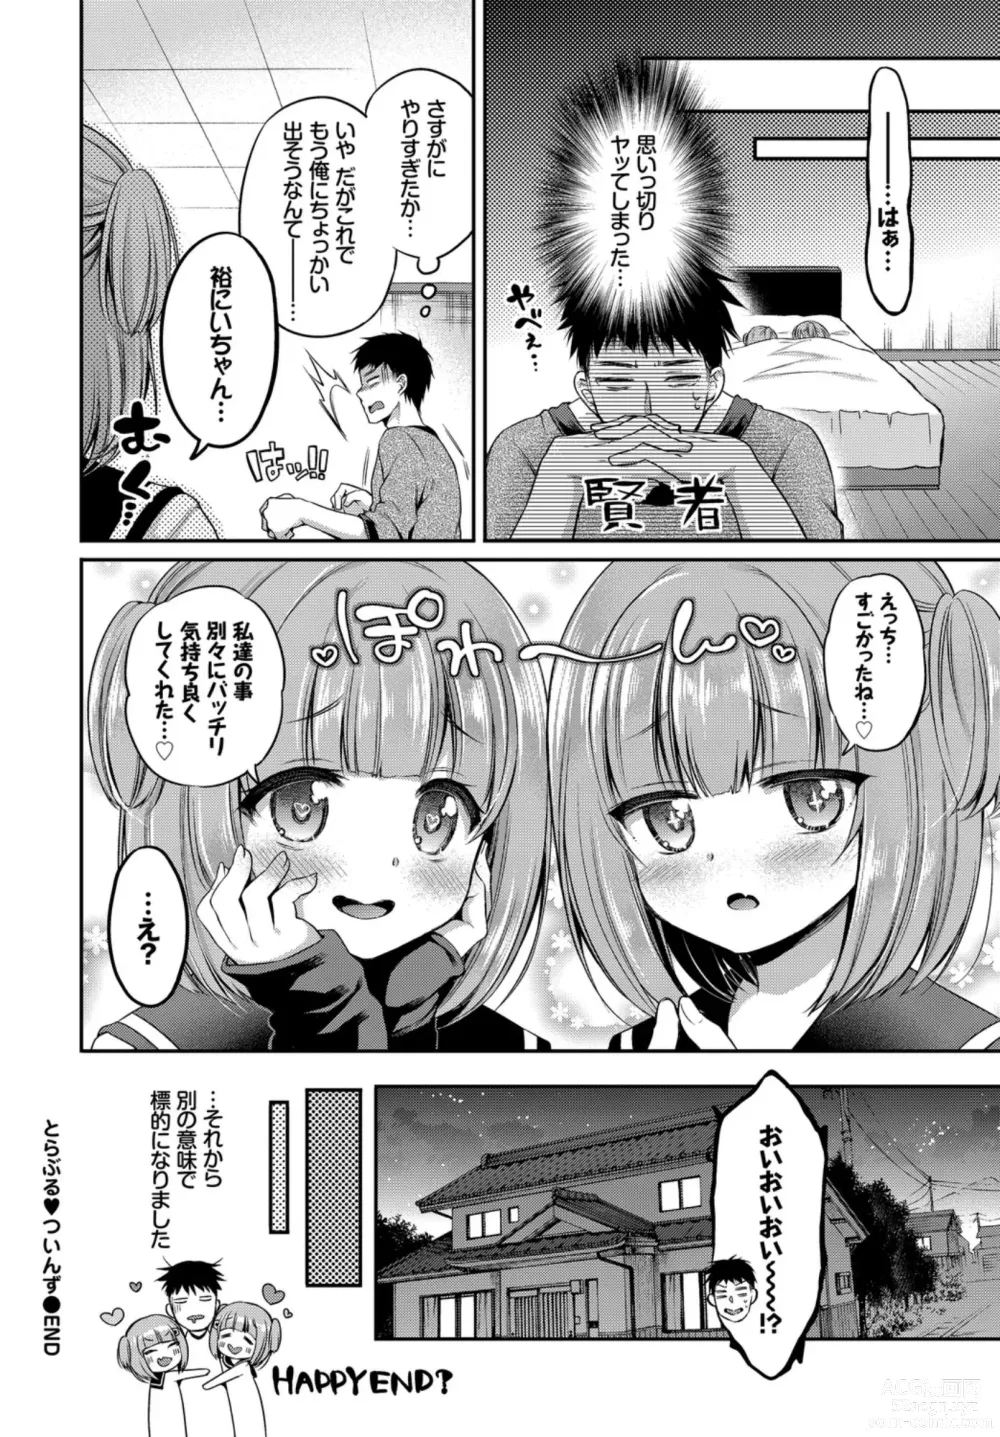 Page 22 of manga Oppai Sand de Shouten Shichao VOL. 2 ~Futago Hen~